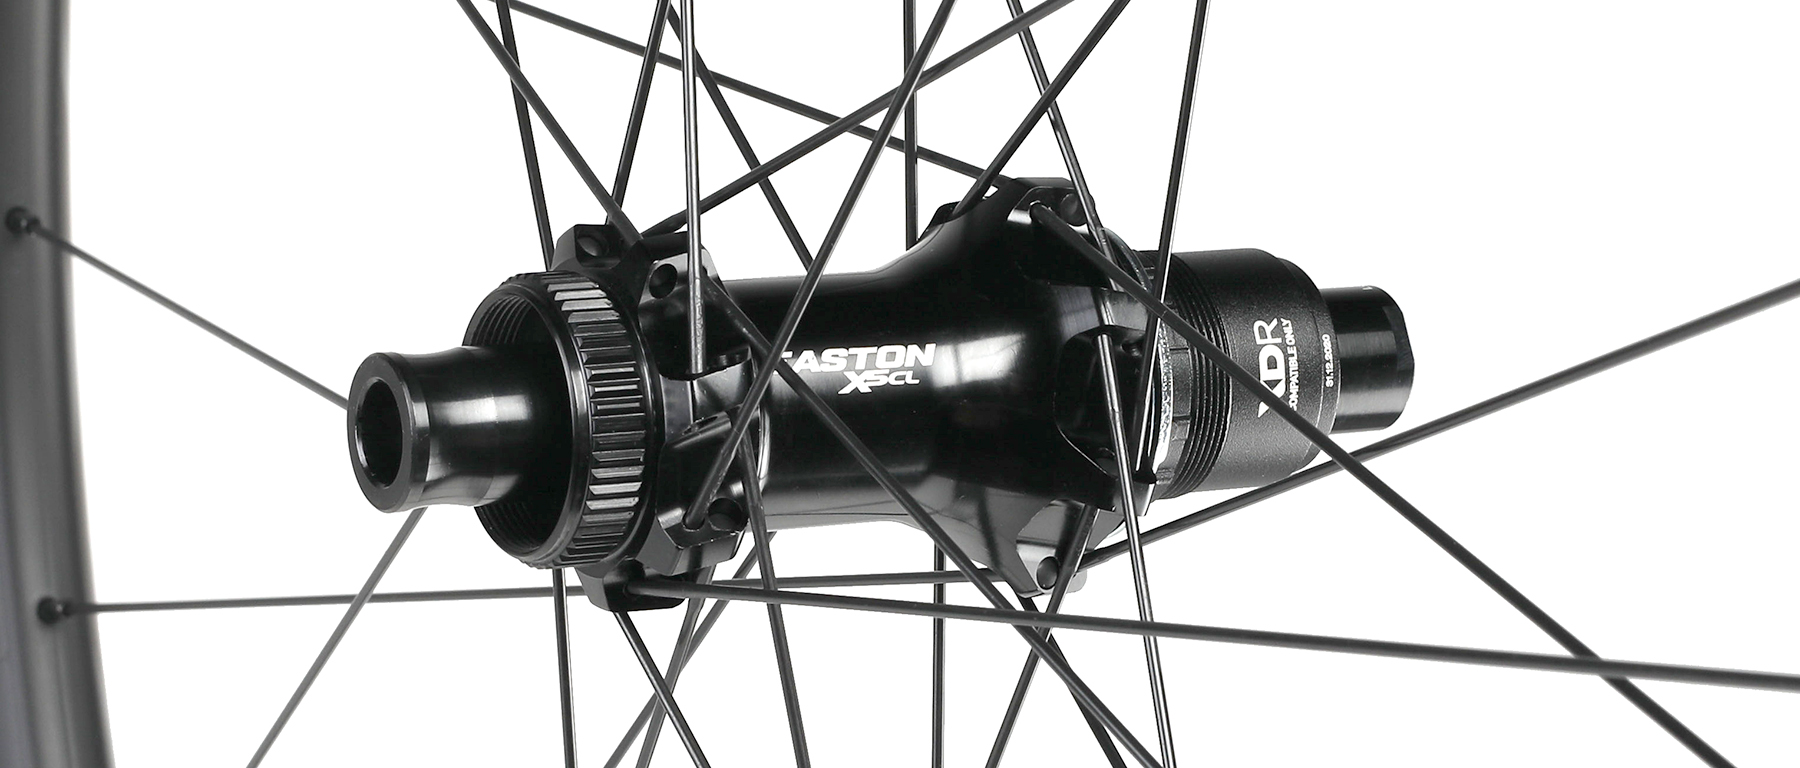 Easton EC70 AX Carbon Disc Rear Wheel